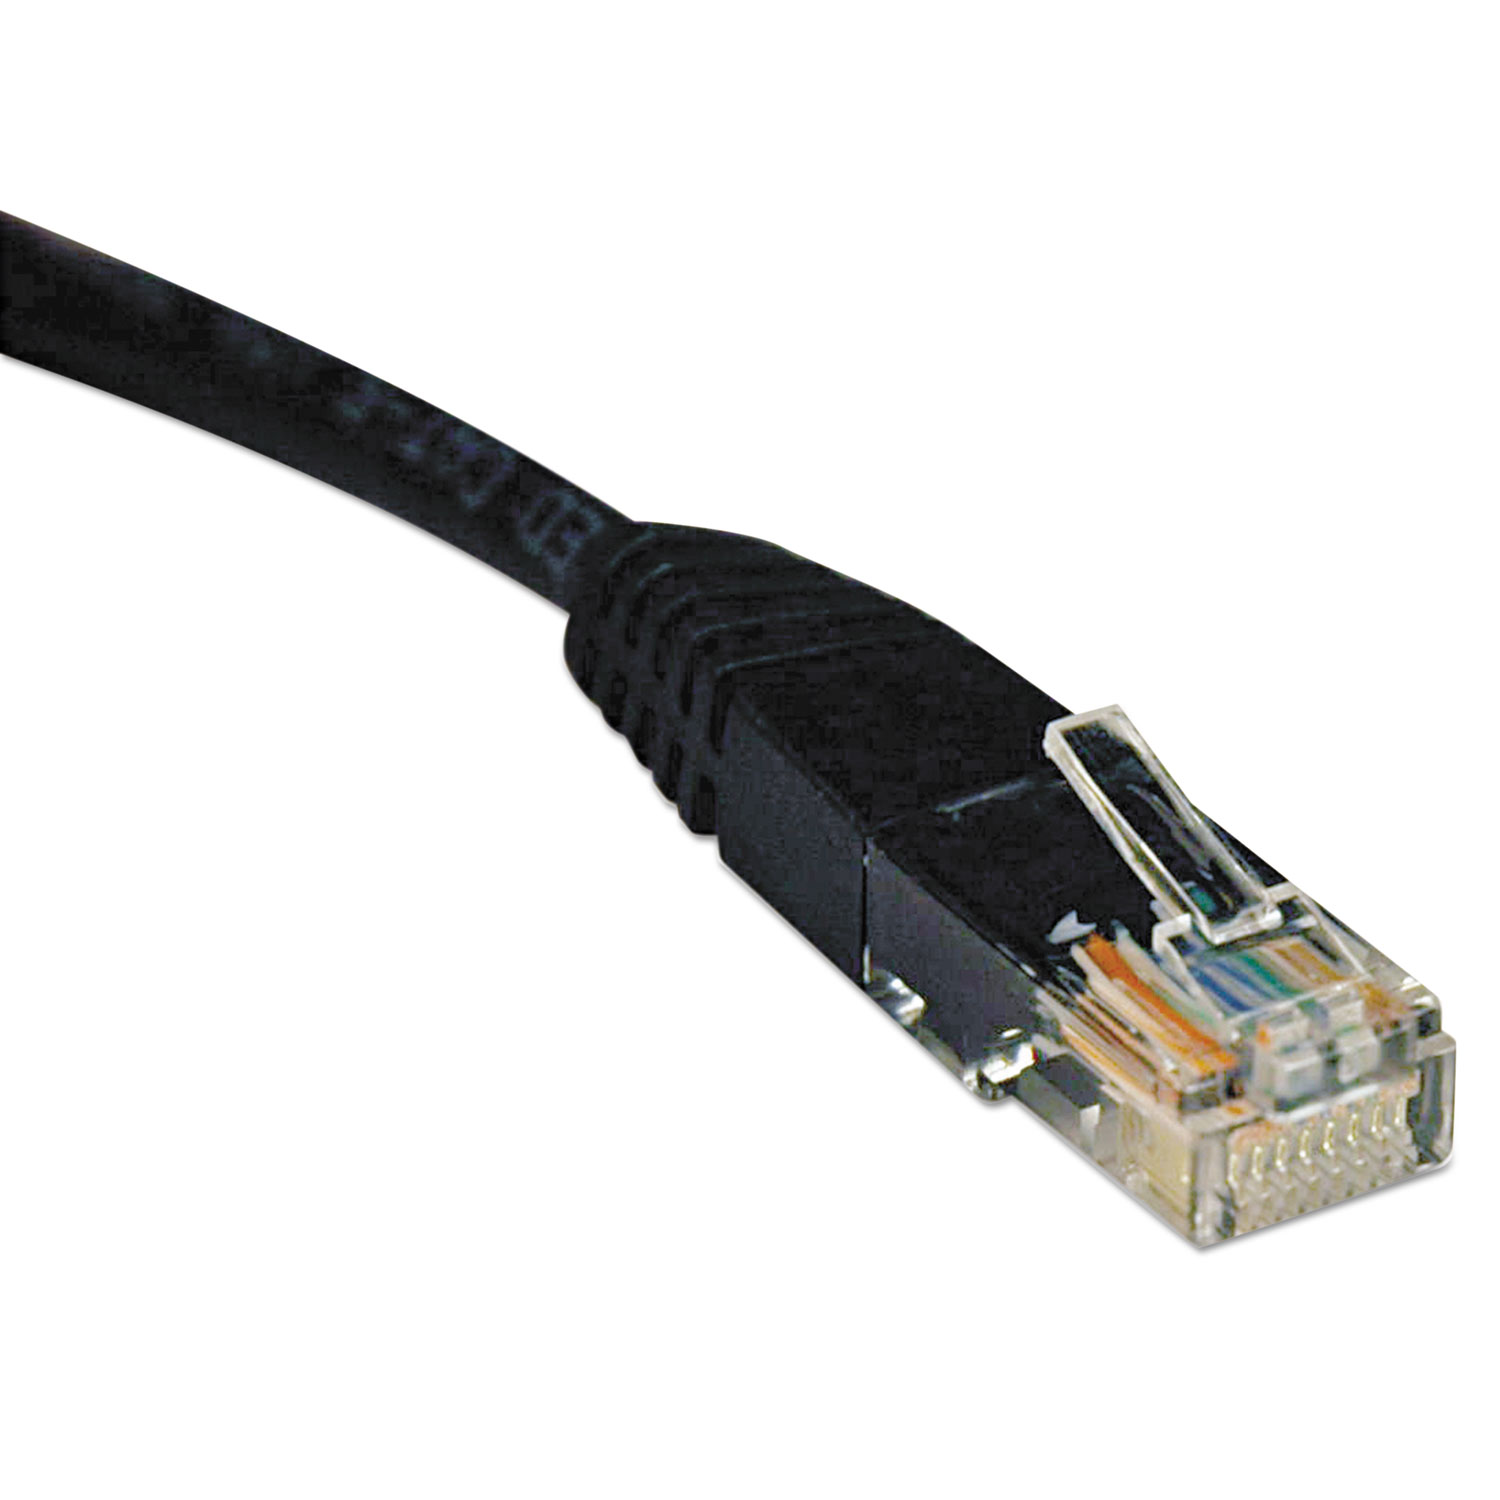  Tripp Lite N002-014-BK Cat5e 350MHz Molded Patch Cable, RJ45 (M/M), 14 ft., Black (TRPN002014BK) 